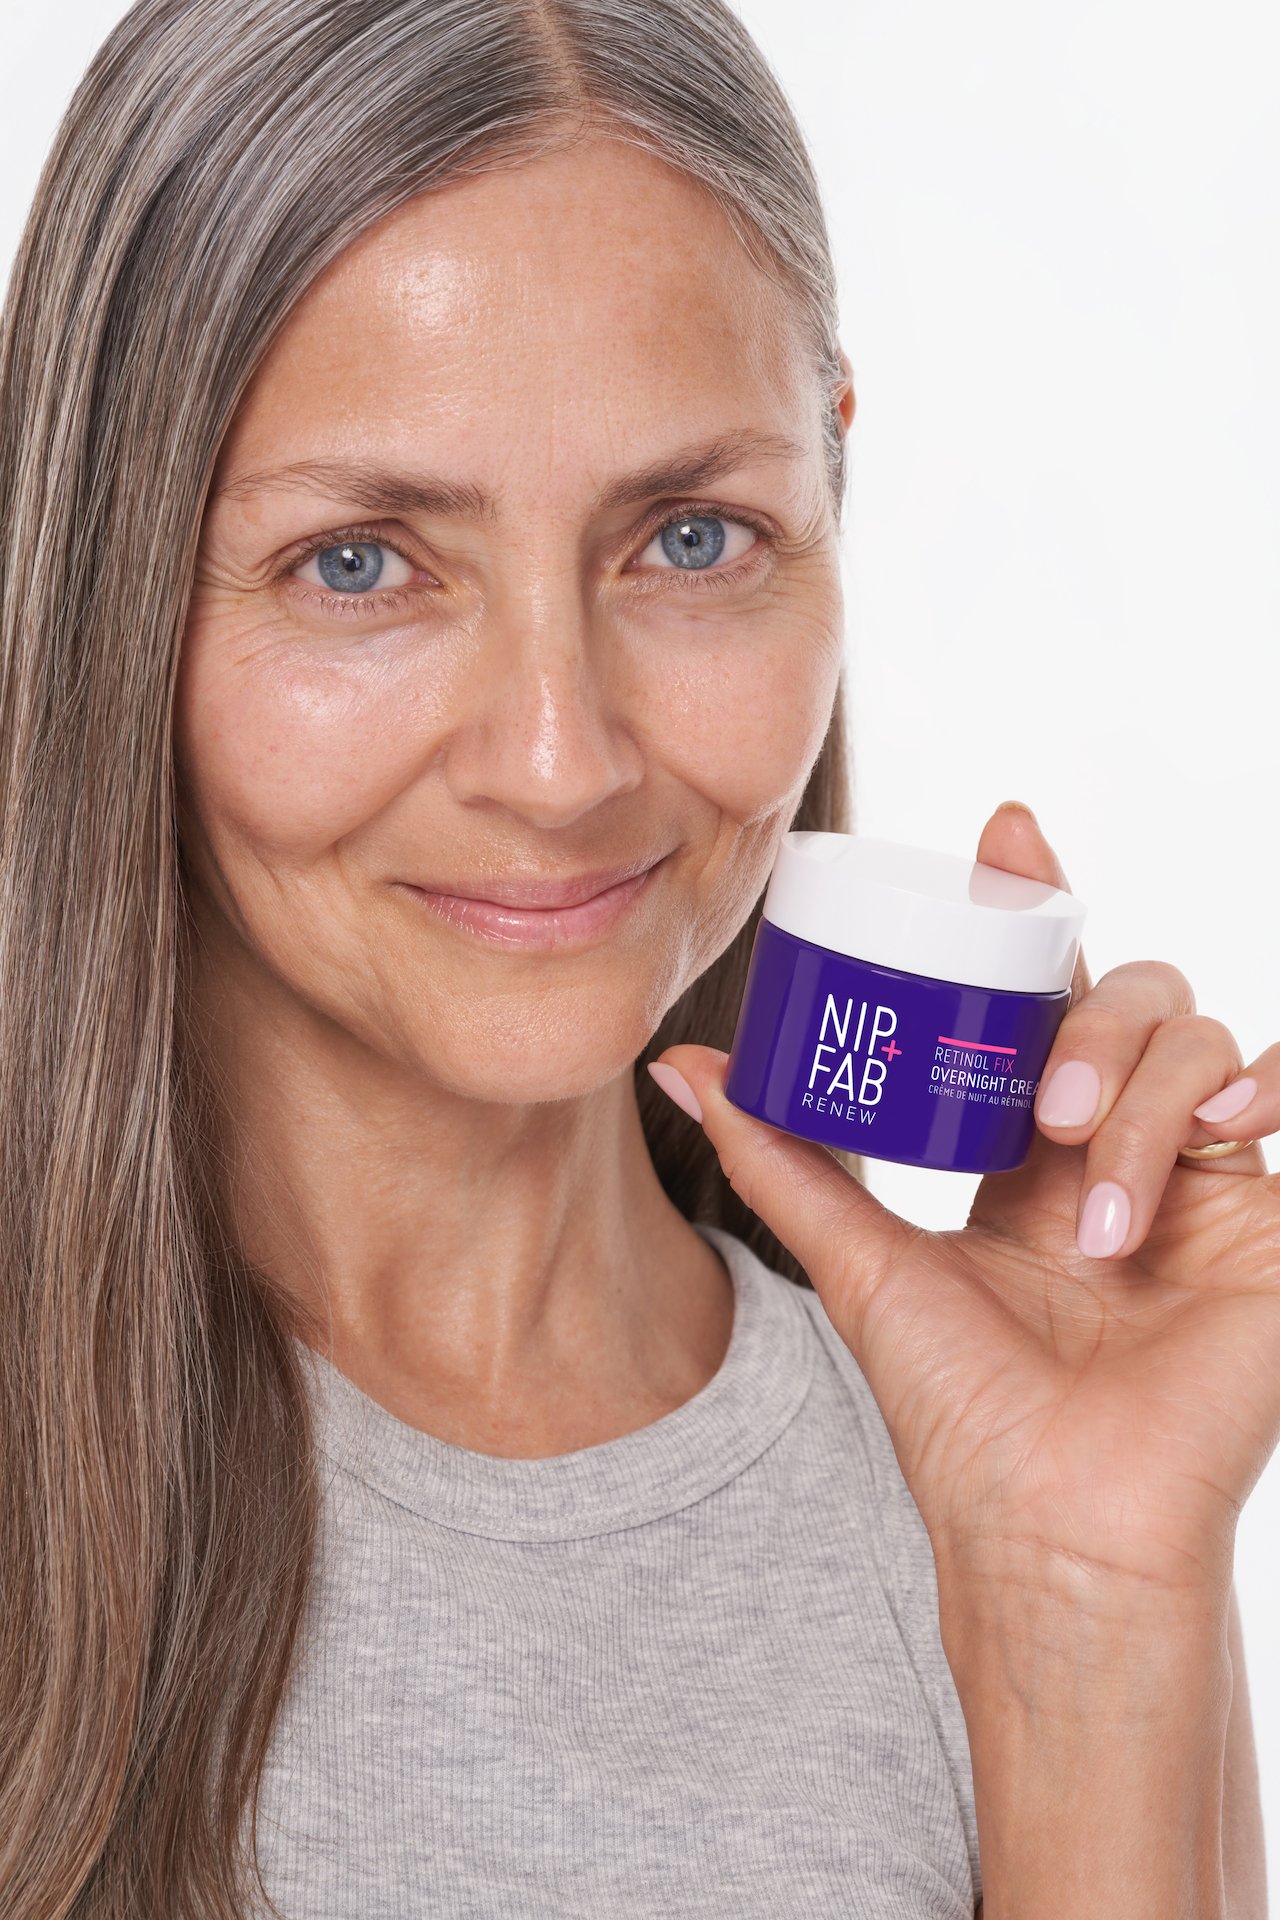 NIP+FAB Retinol Fix Overnight Treatment Cream 50 ml